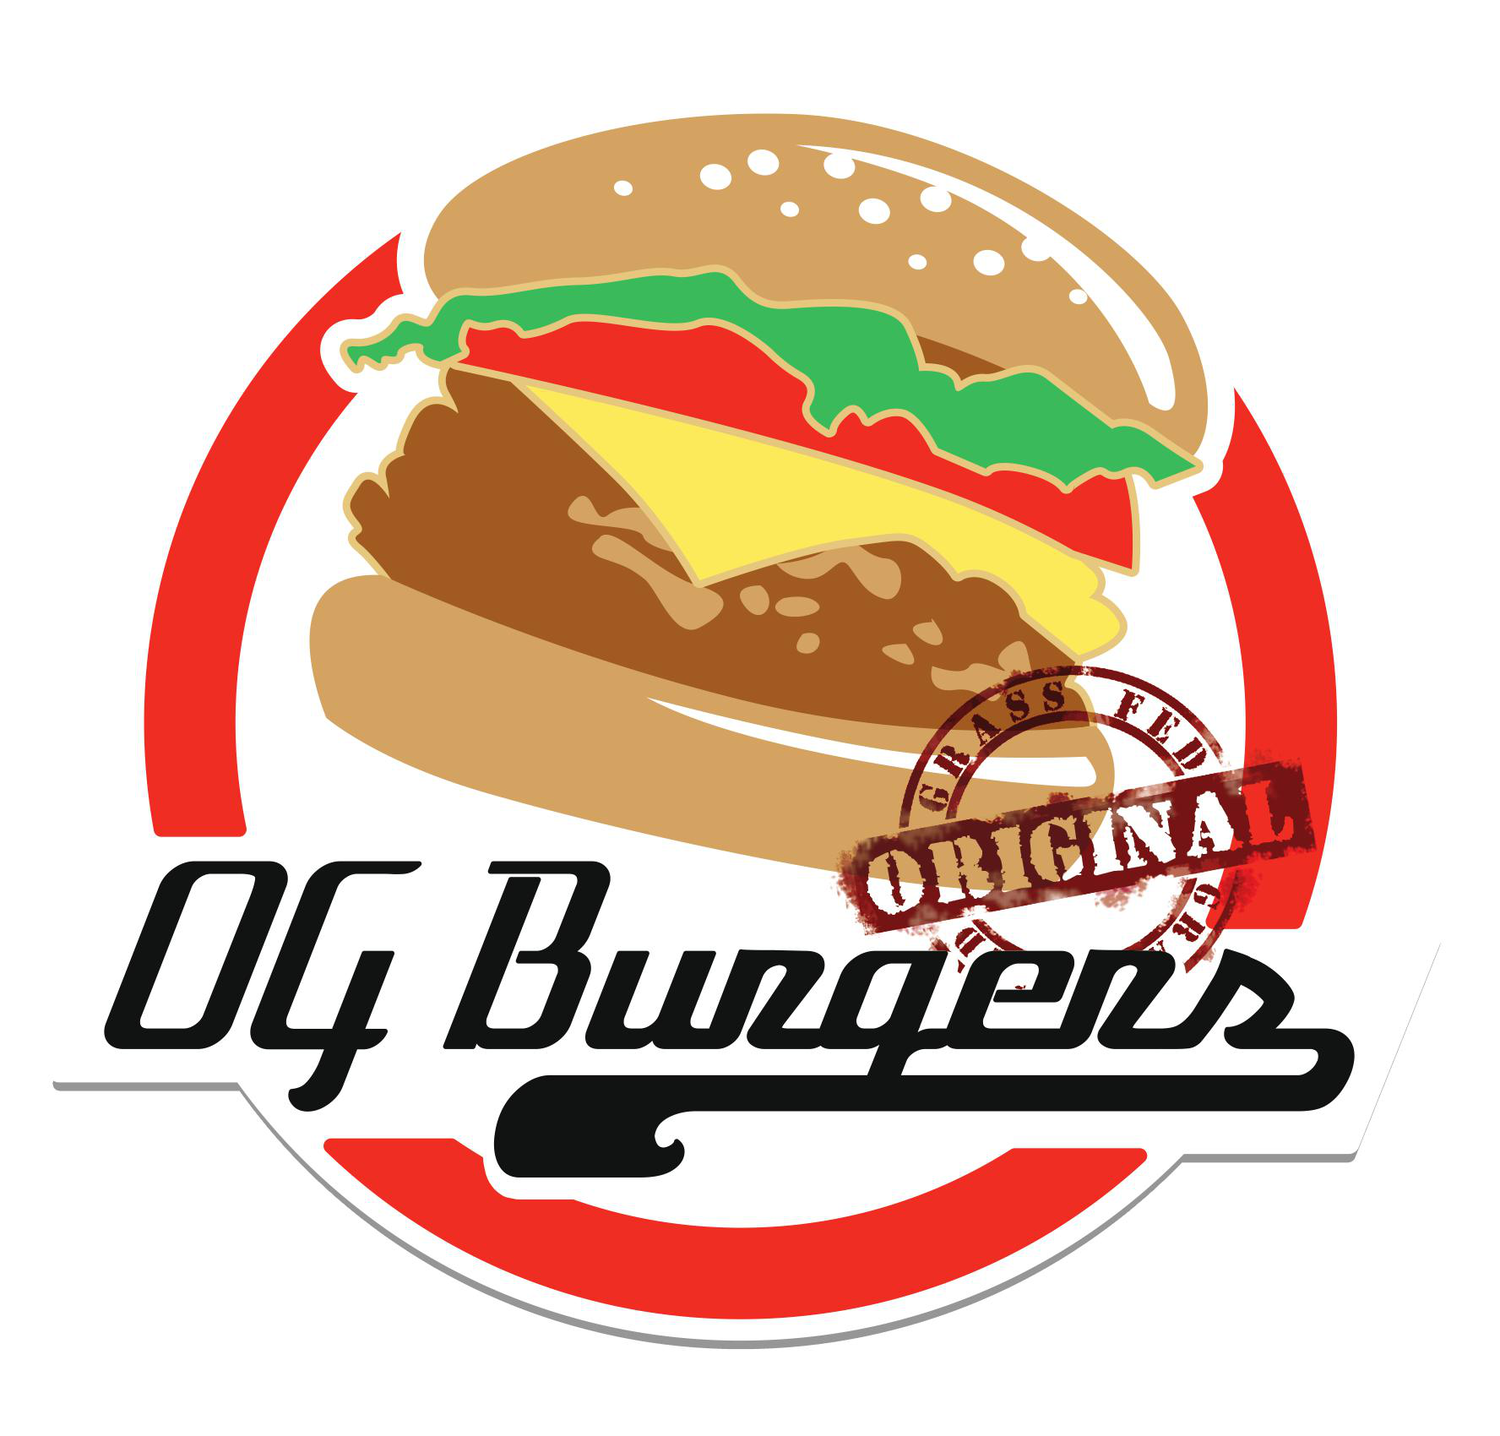 OG Burgers